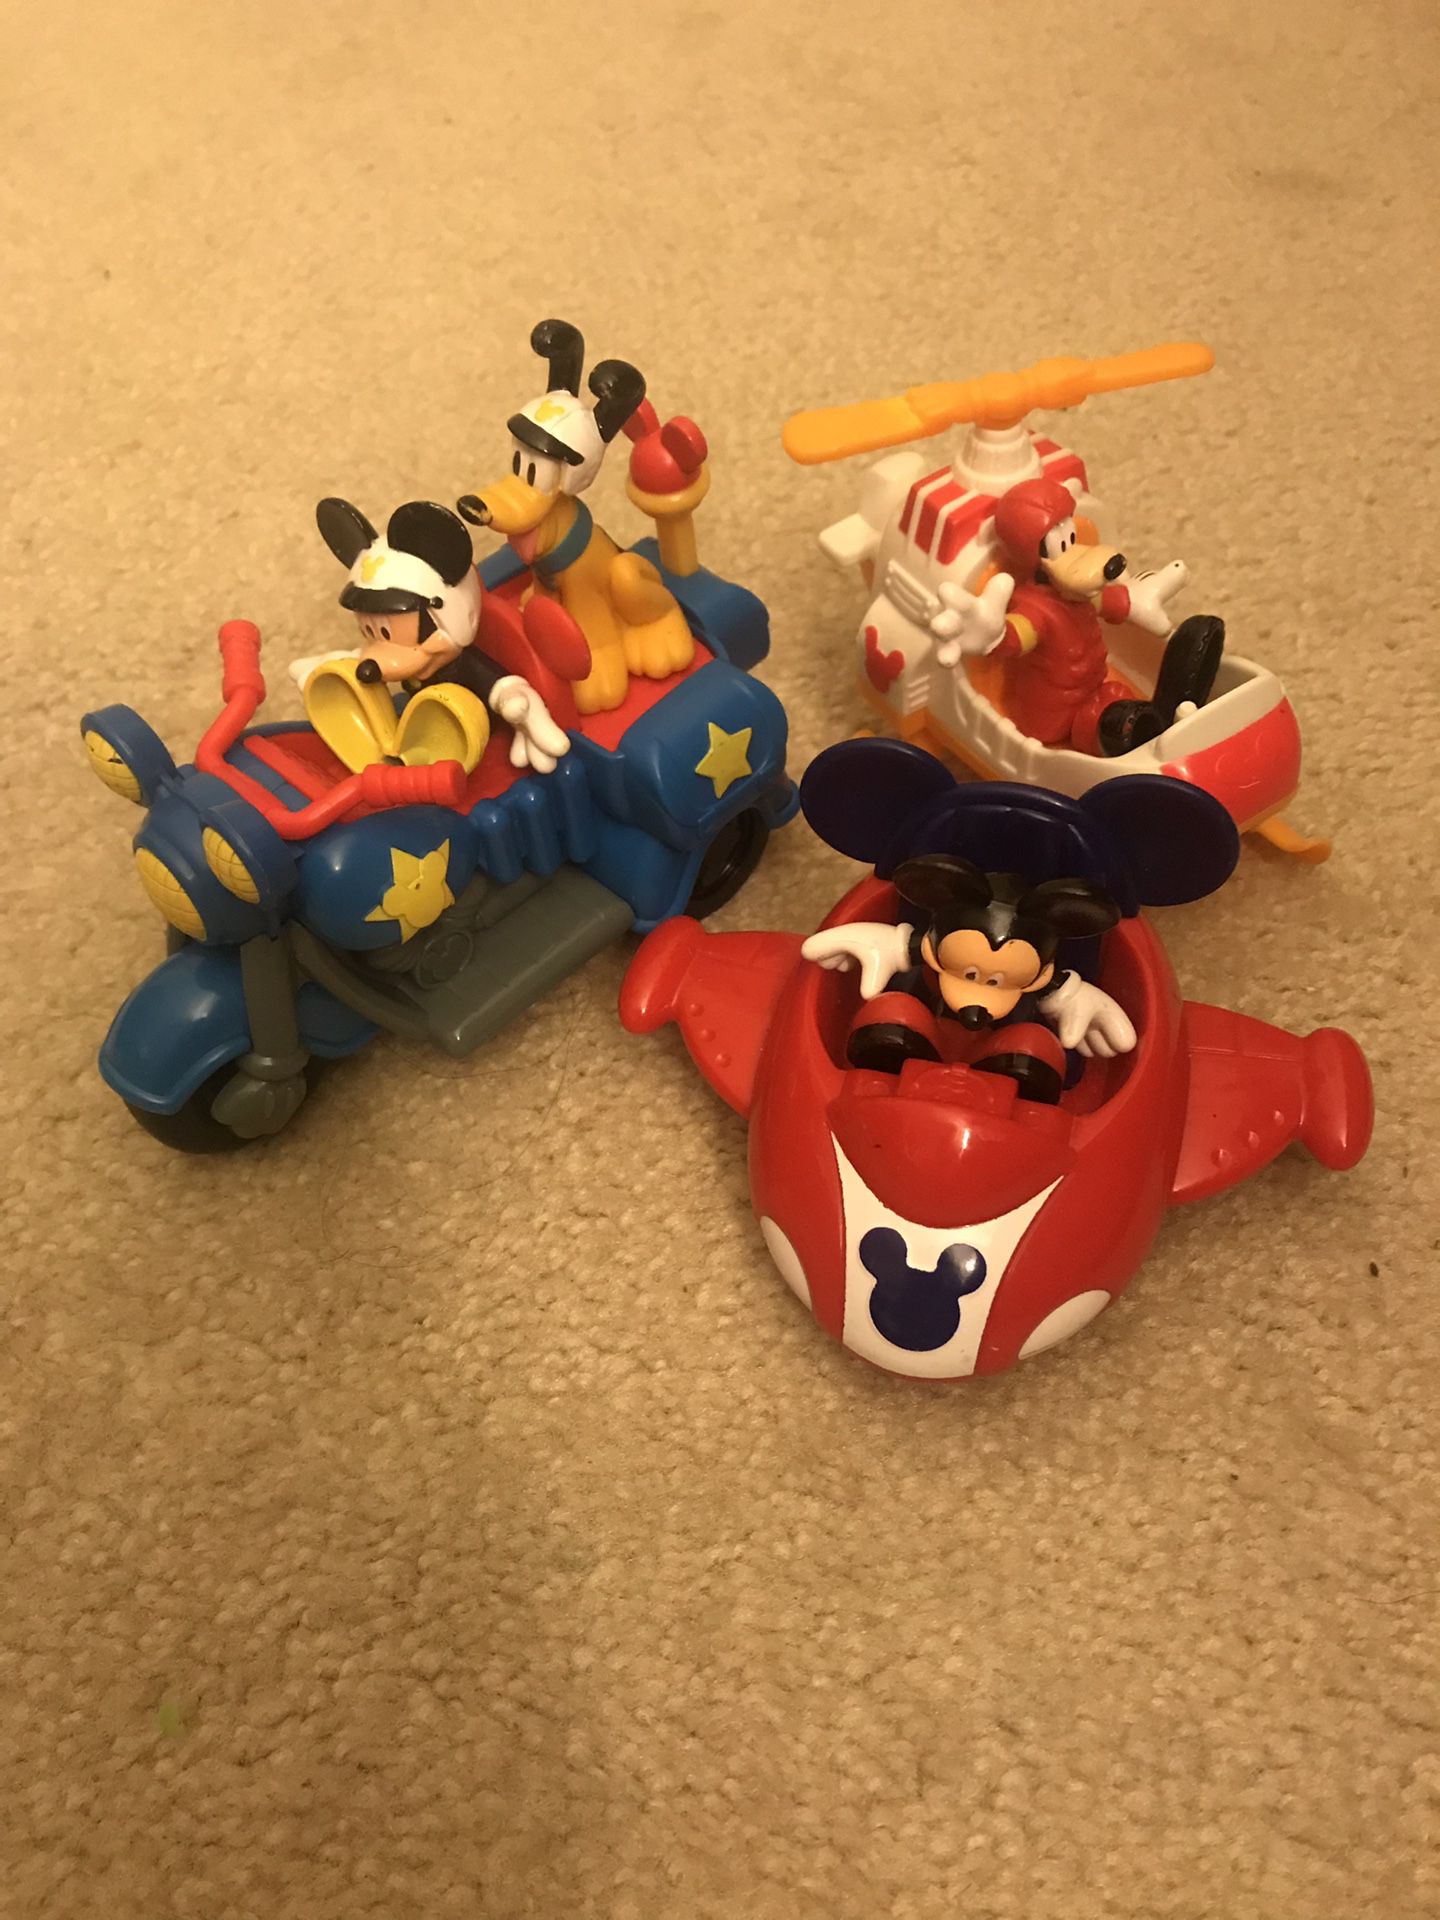 Mickey toys